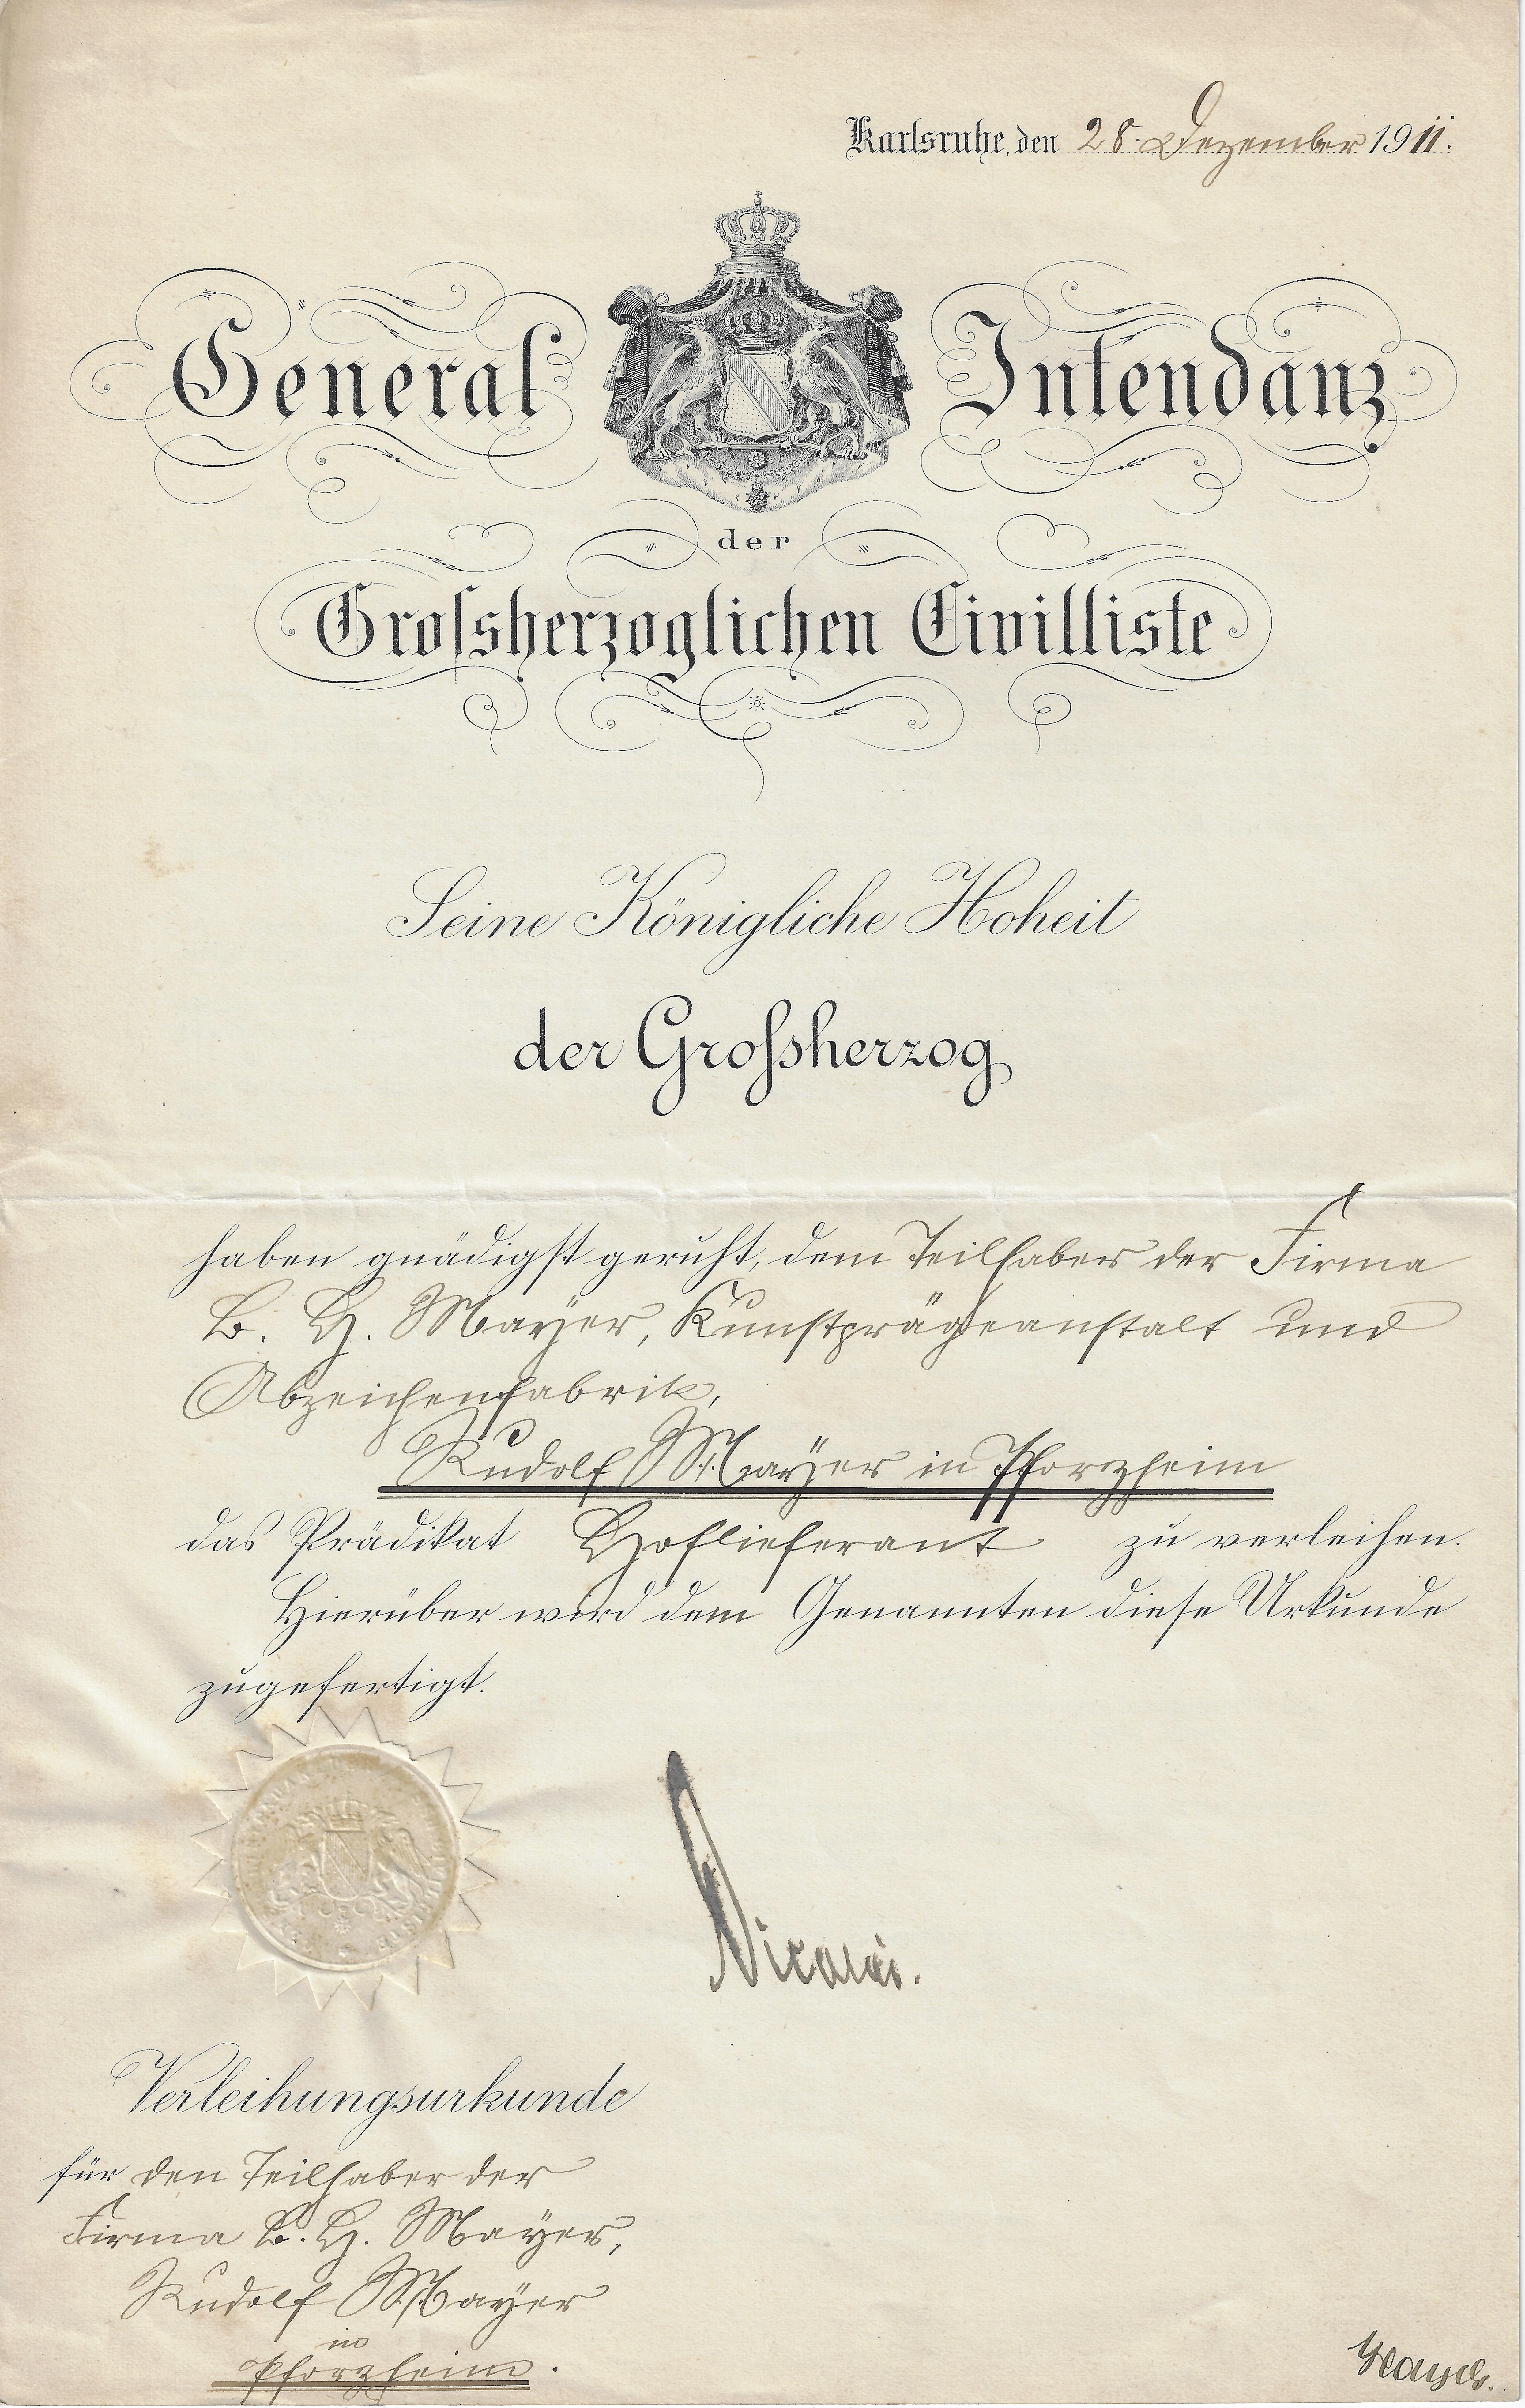 Abbild der Ernennungsurkunde von B.H. Mayer's Kunst-Präge-Anstalt zum Hoflieferanten von 1911